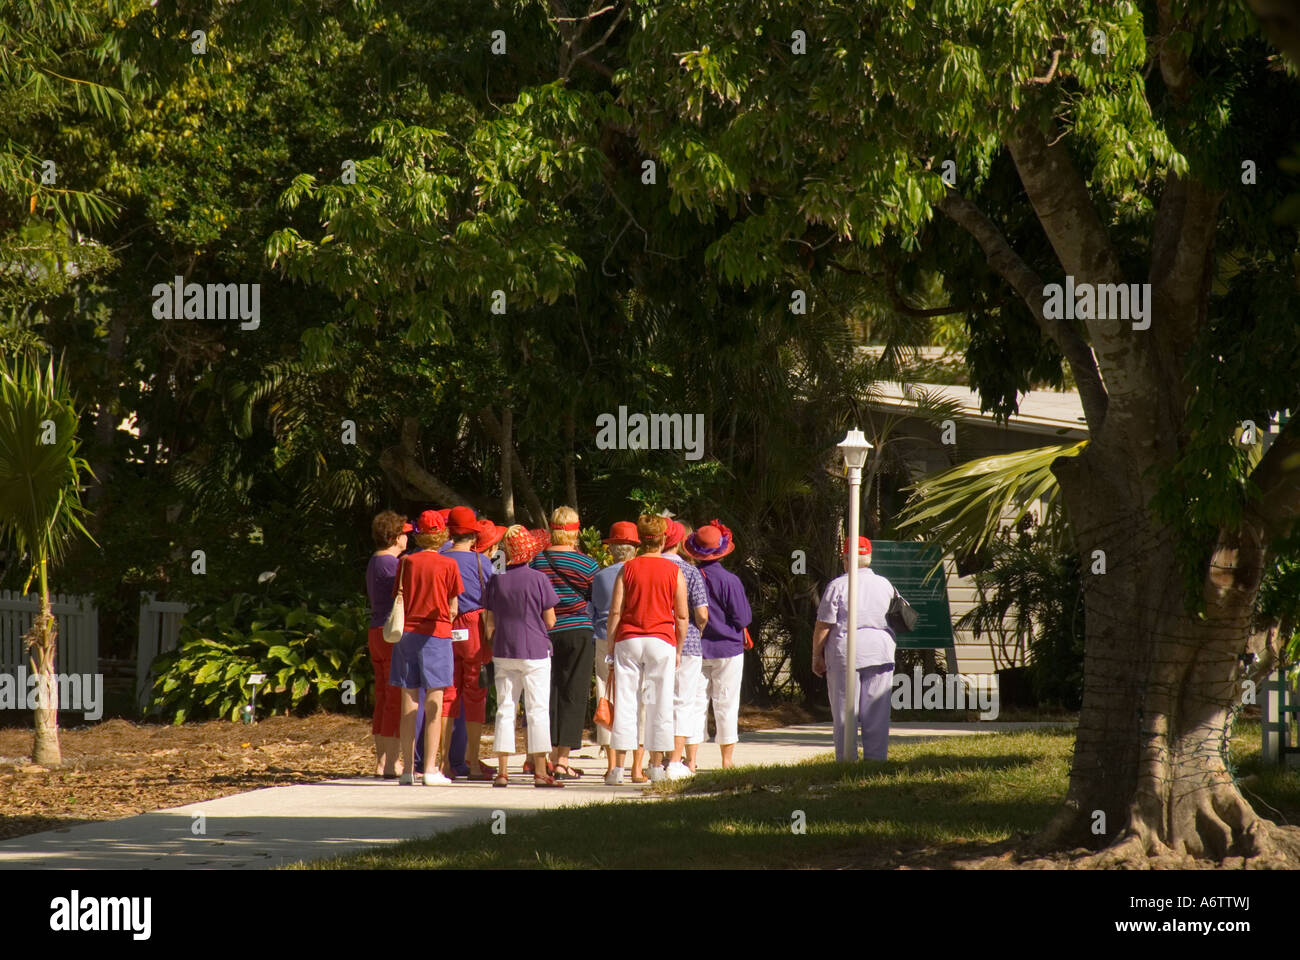 Thomas Edison Winter home Immobilien Fort Myers Florida Touristen auf Tour am Botanischen Garten Gehweg Stockfoto